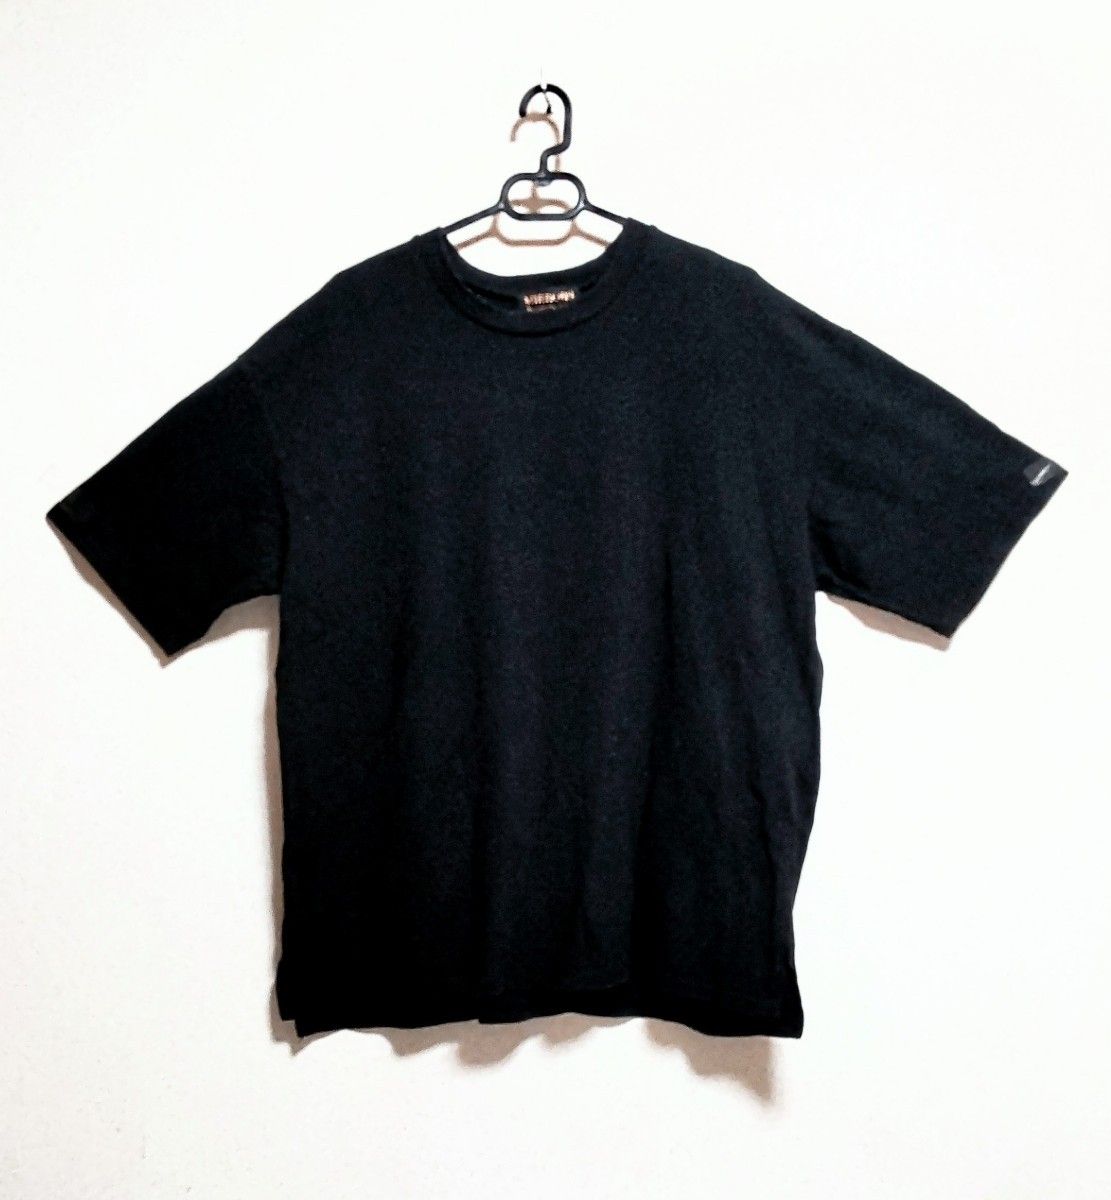 レア★MIRROR9 × MADE IN WORLD コラボ Tシャツ ビッグシルエット 黒色 ブラック フリーサイズ